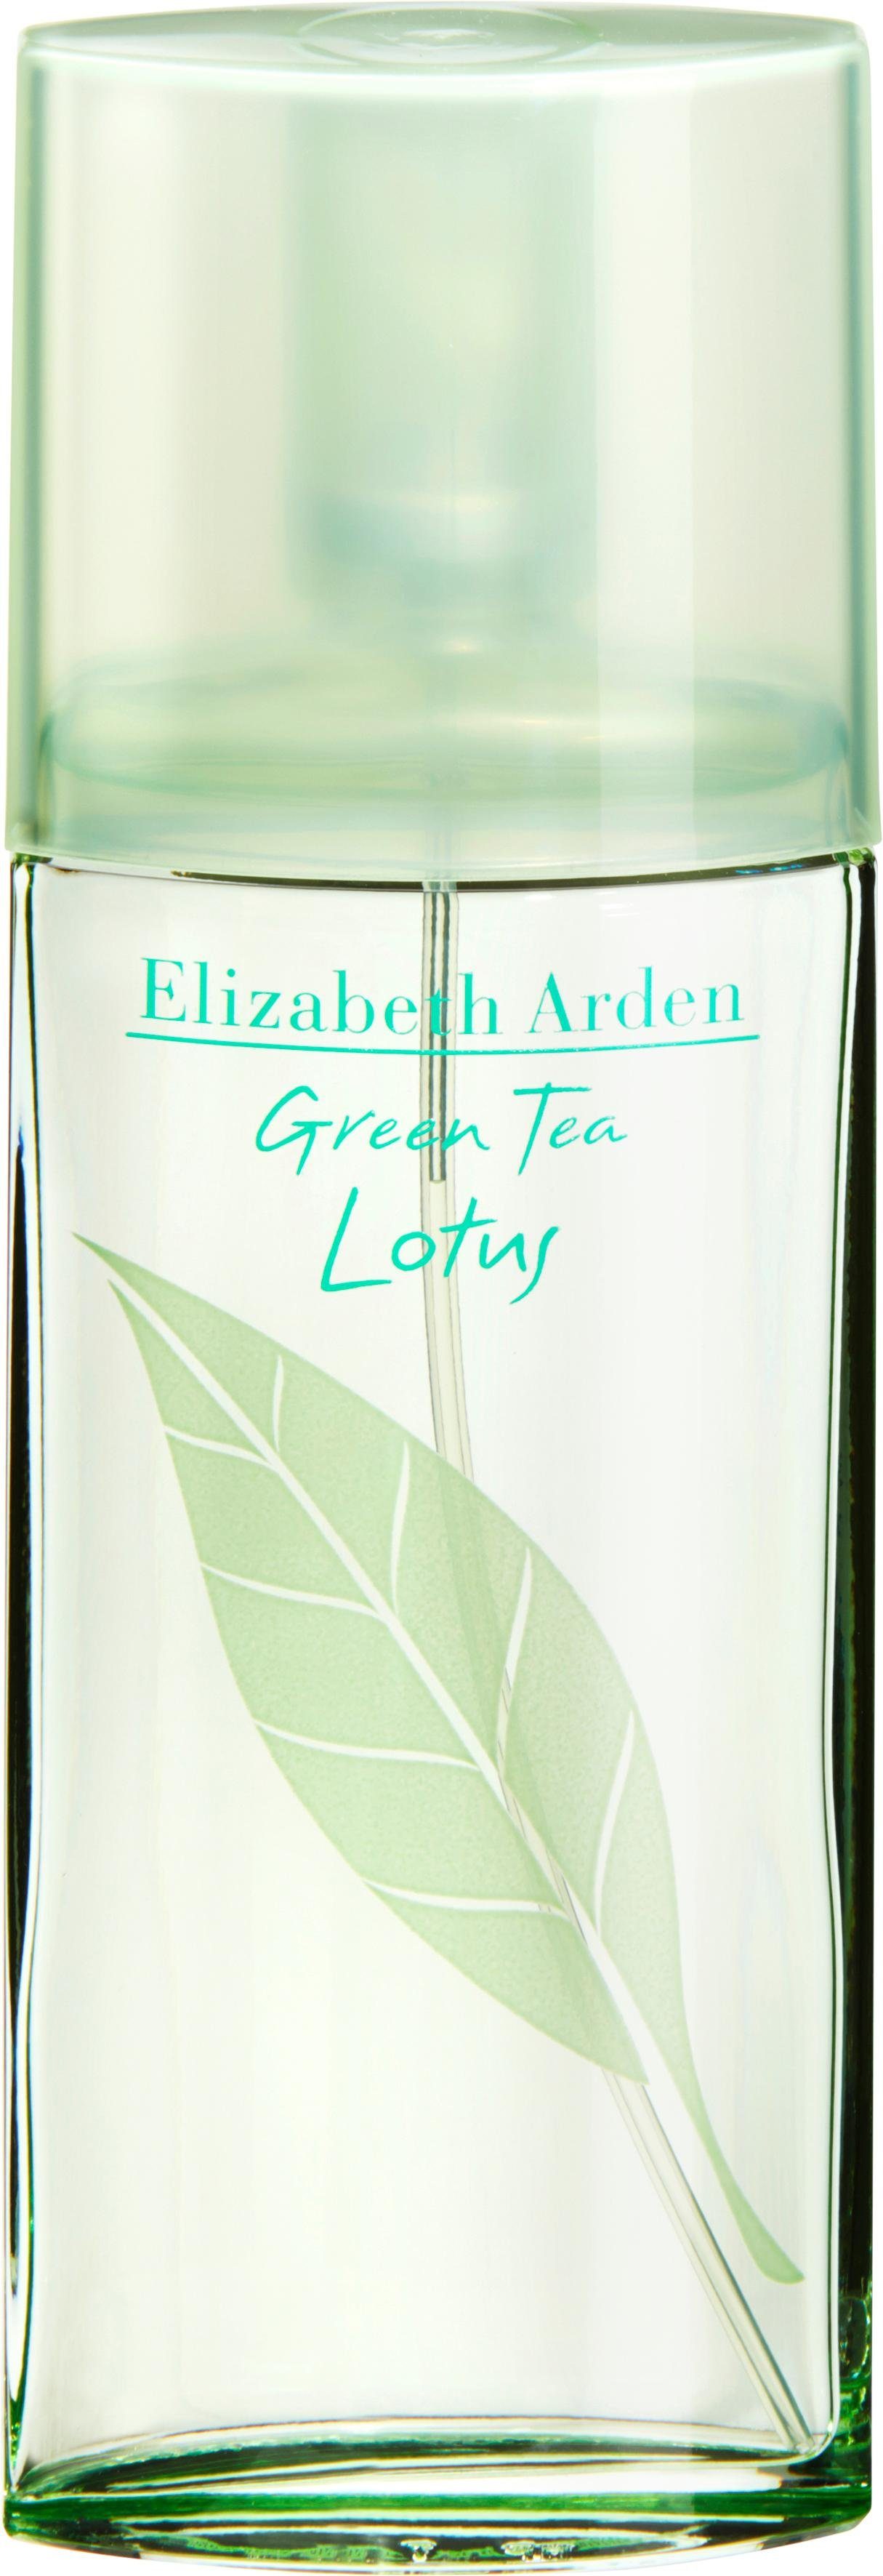 Elizabeth Arden Eau de Toilette Green Tea Lotus | Eau de Toilette